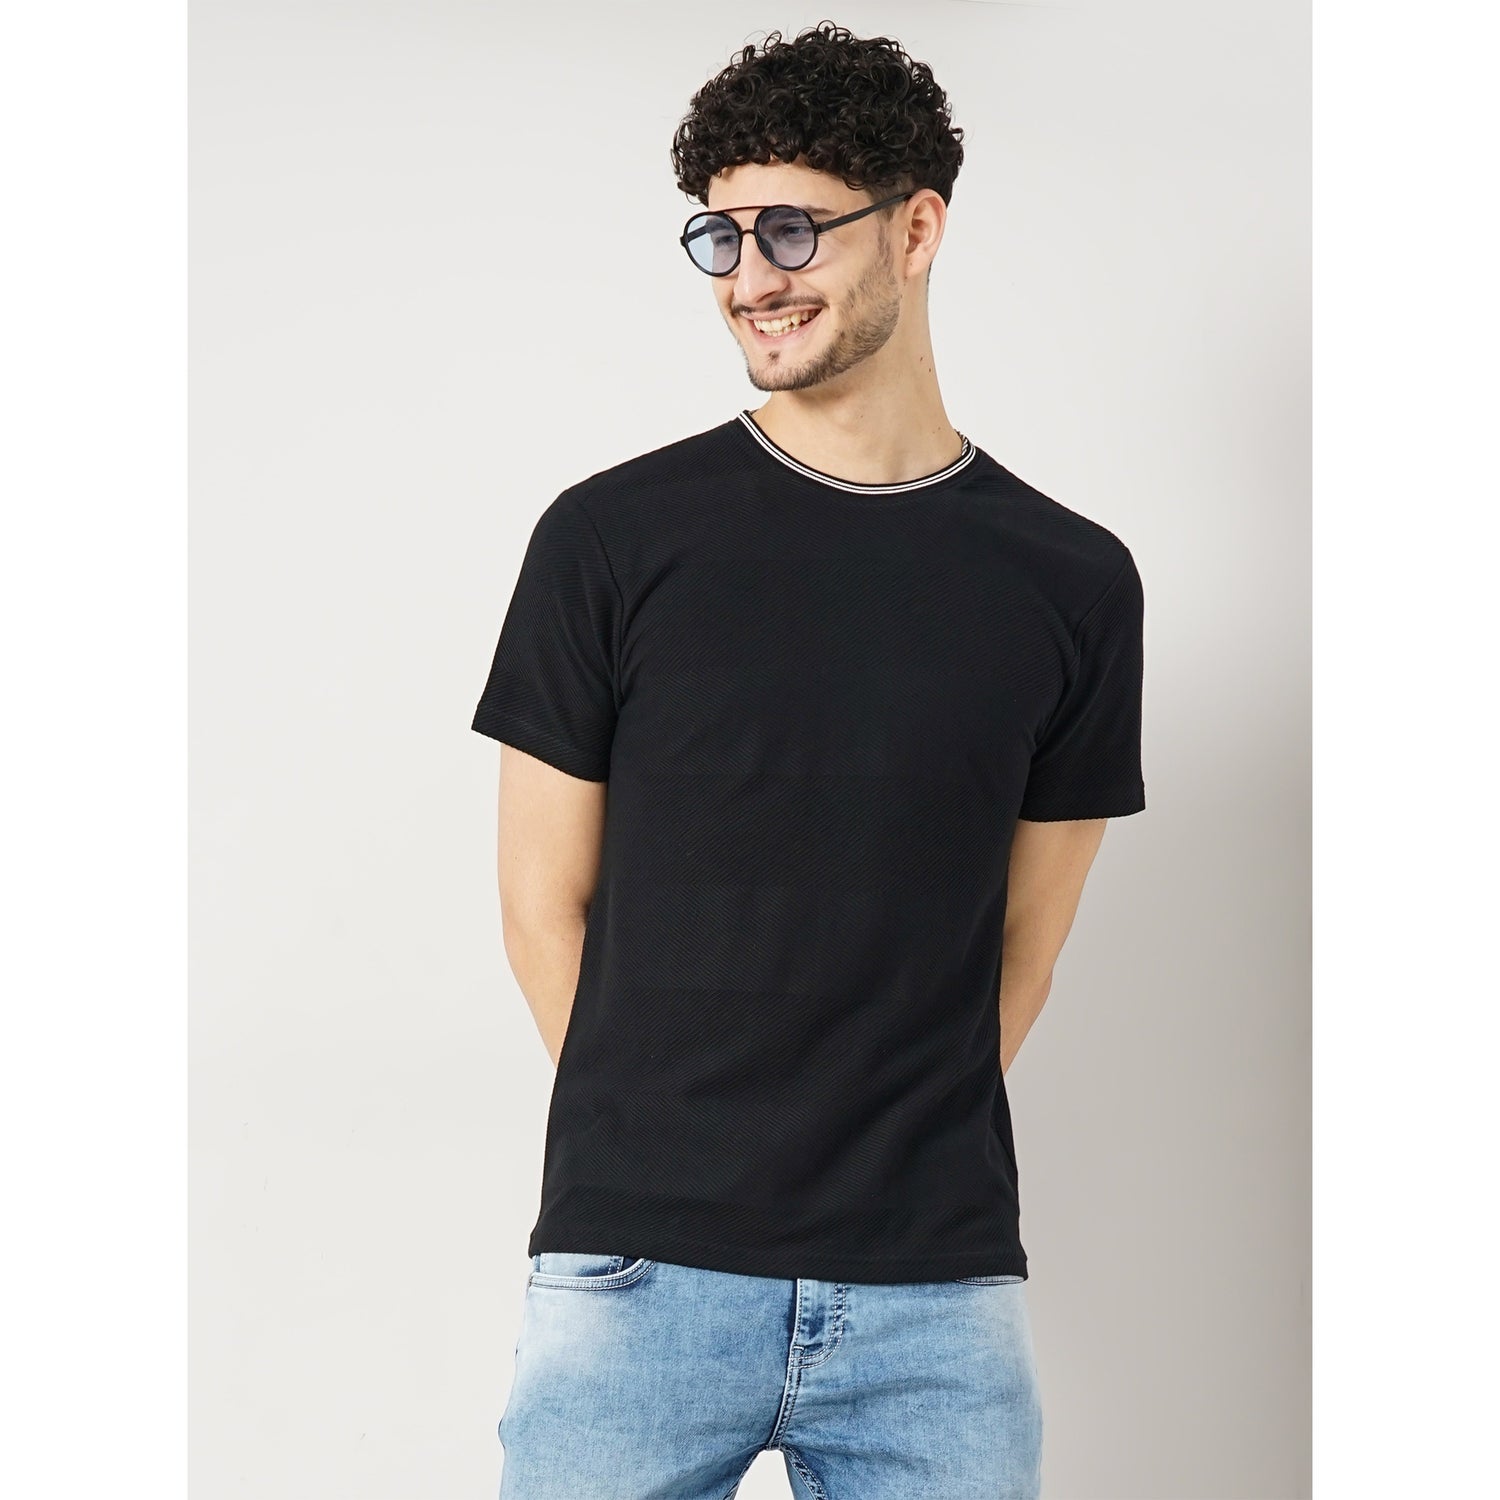 Solid Black Half Round Neck Fashion Tshirt (FEHERRING)